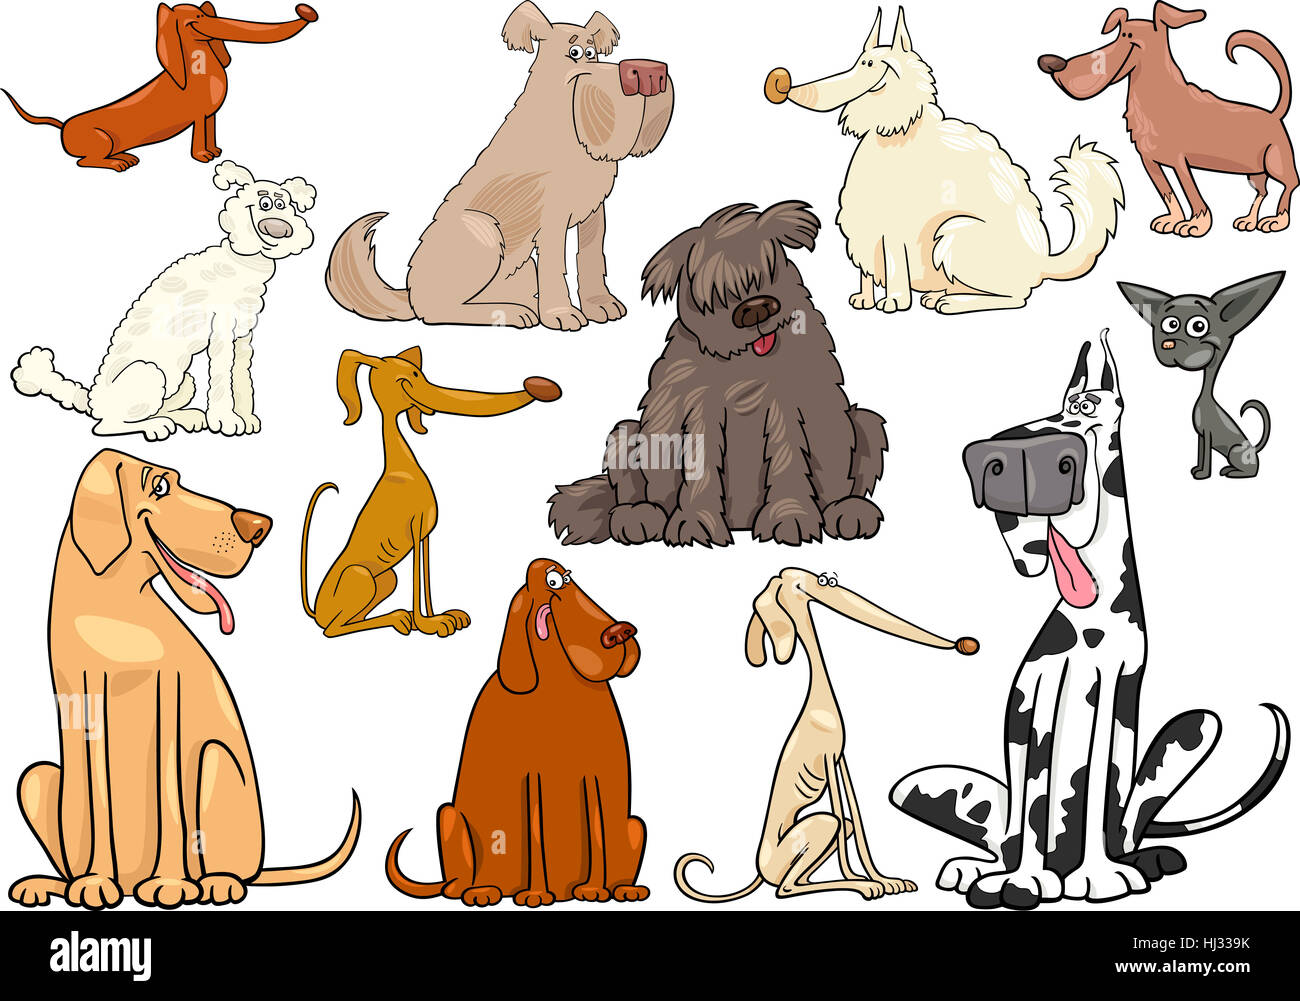 Animal, animal de compagnie, chien, chiot, illustration, set, ravi, ambition, Banque D'Images